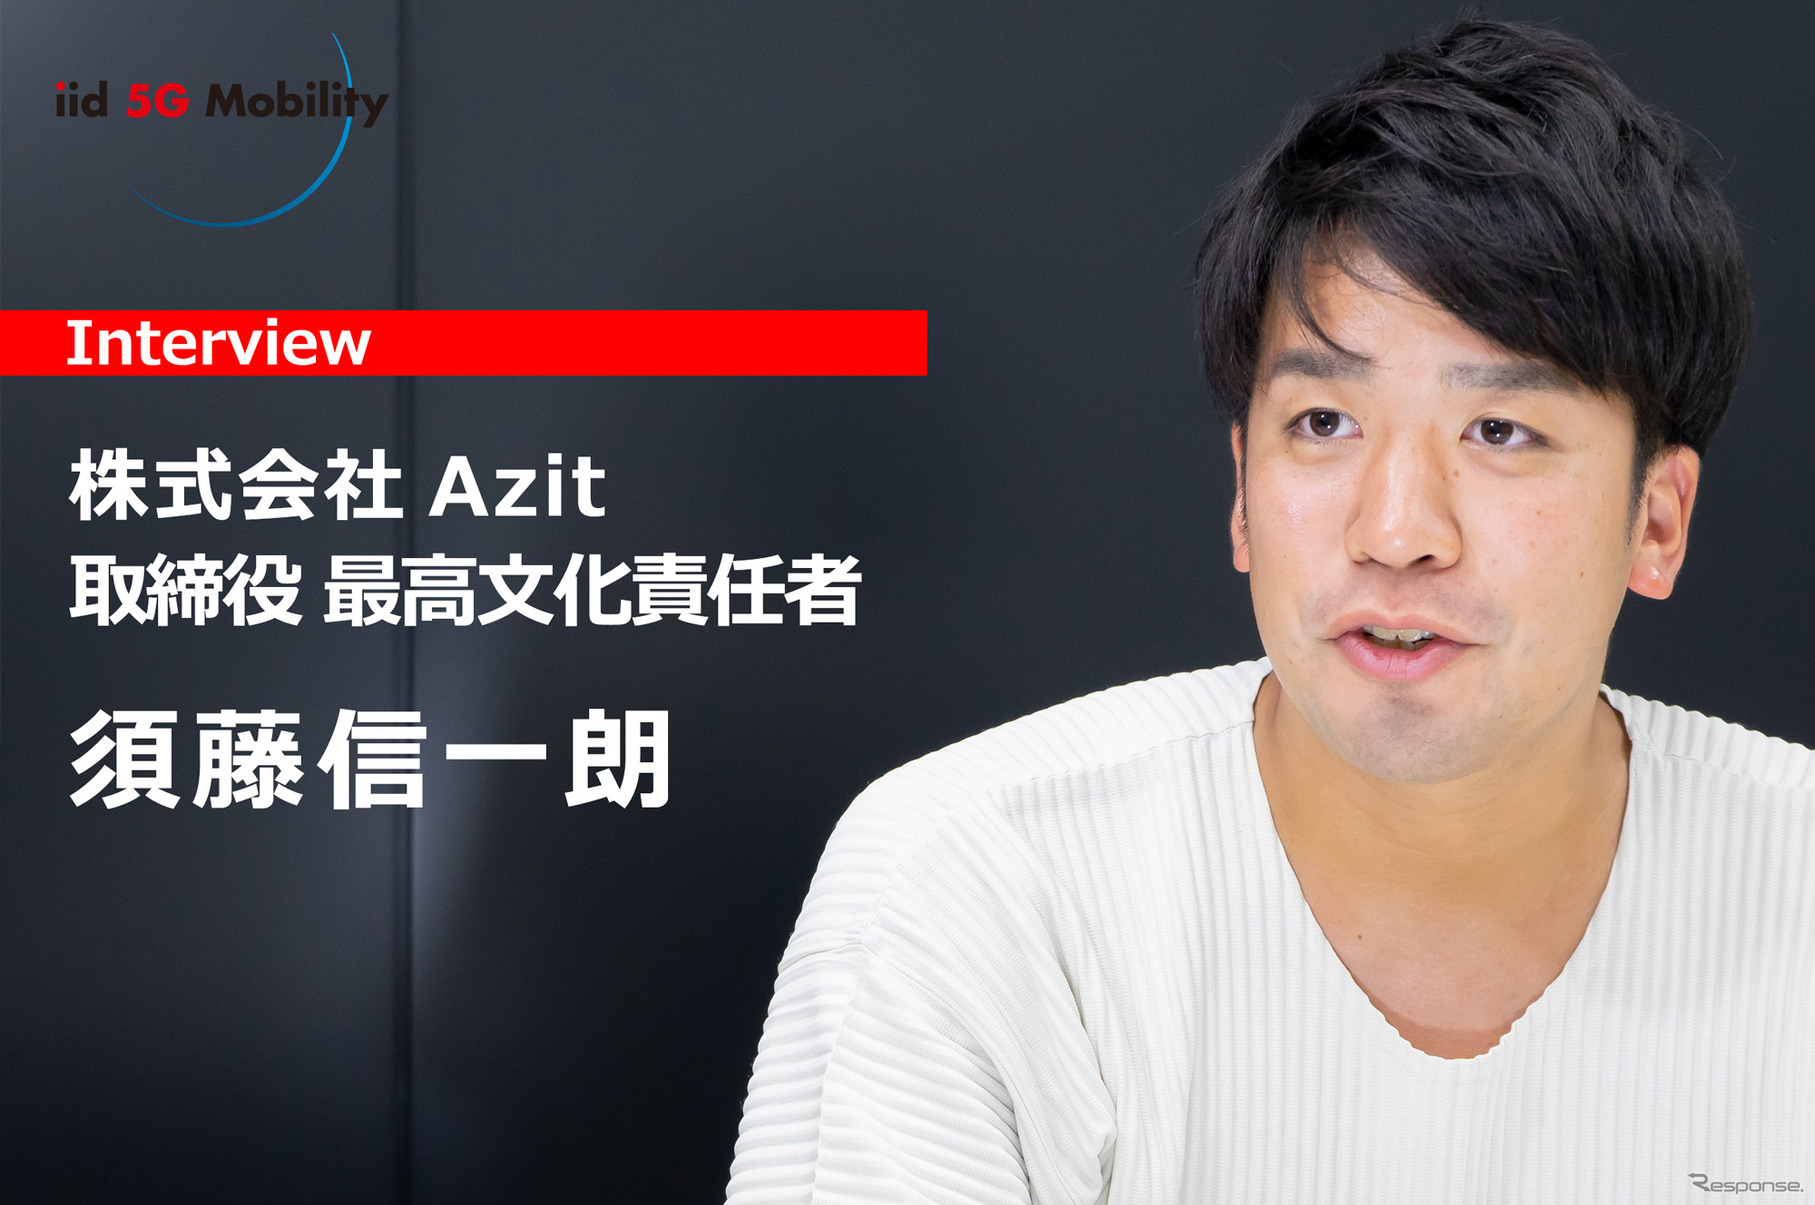 株式会社Azit共同創業者 取締役CCO（最高文化責任者）の須藤信一朗氏